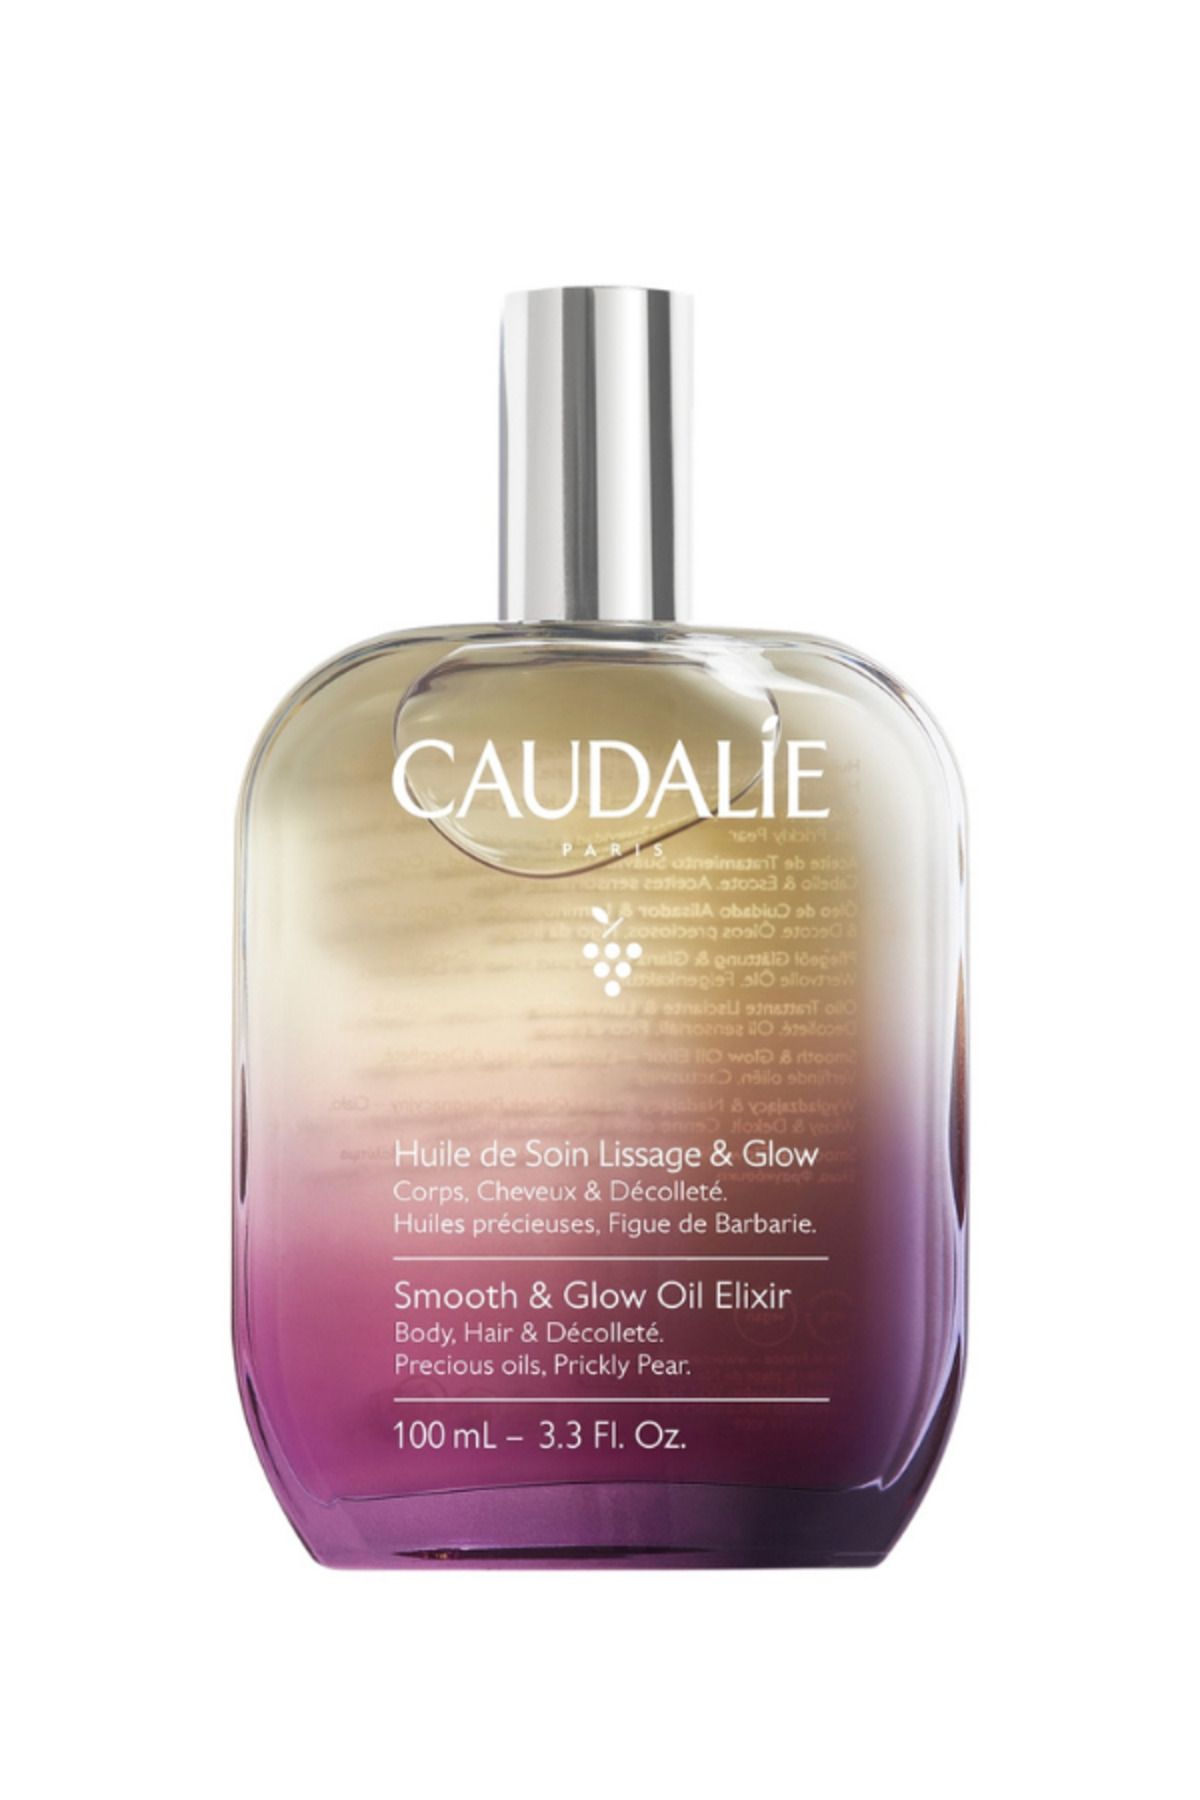 Caudalie Smooth & Glow Oil Elixir 100 ml (Vücut, saç ve dekolte bölgesini besler ve hoş kokusuyla sarar)